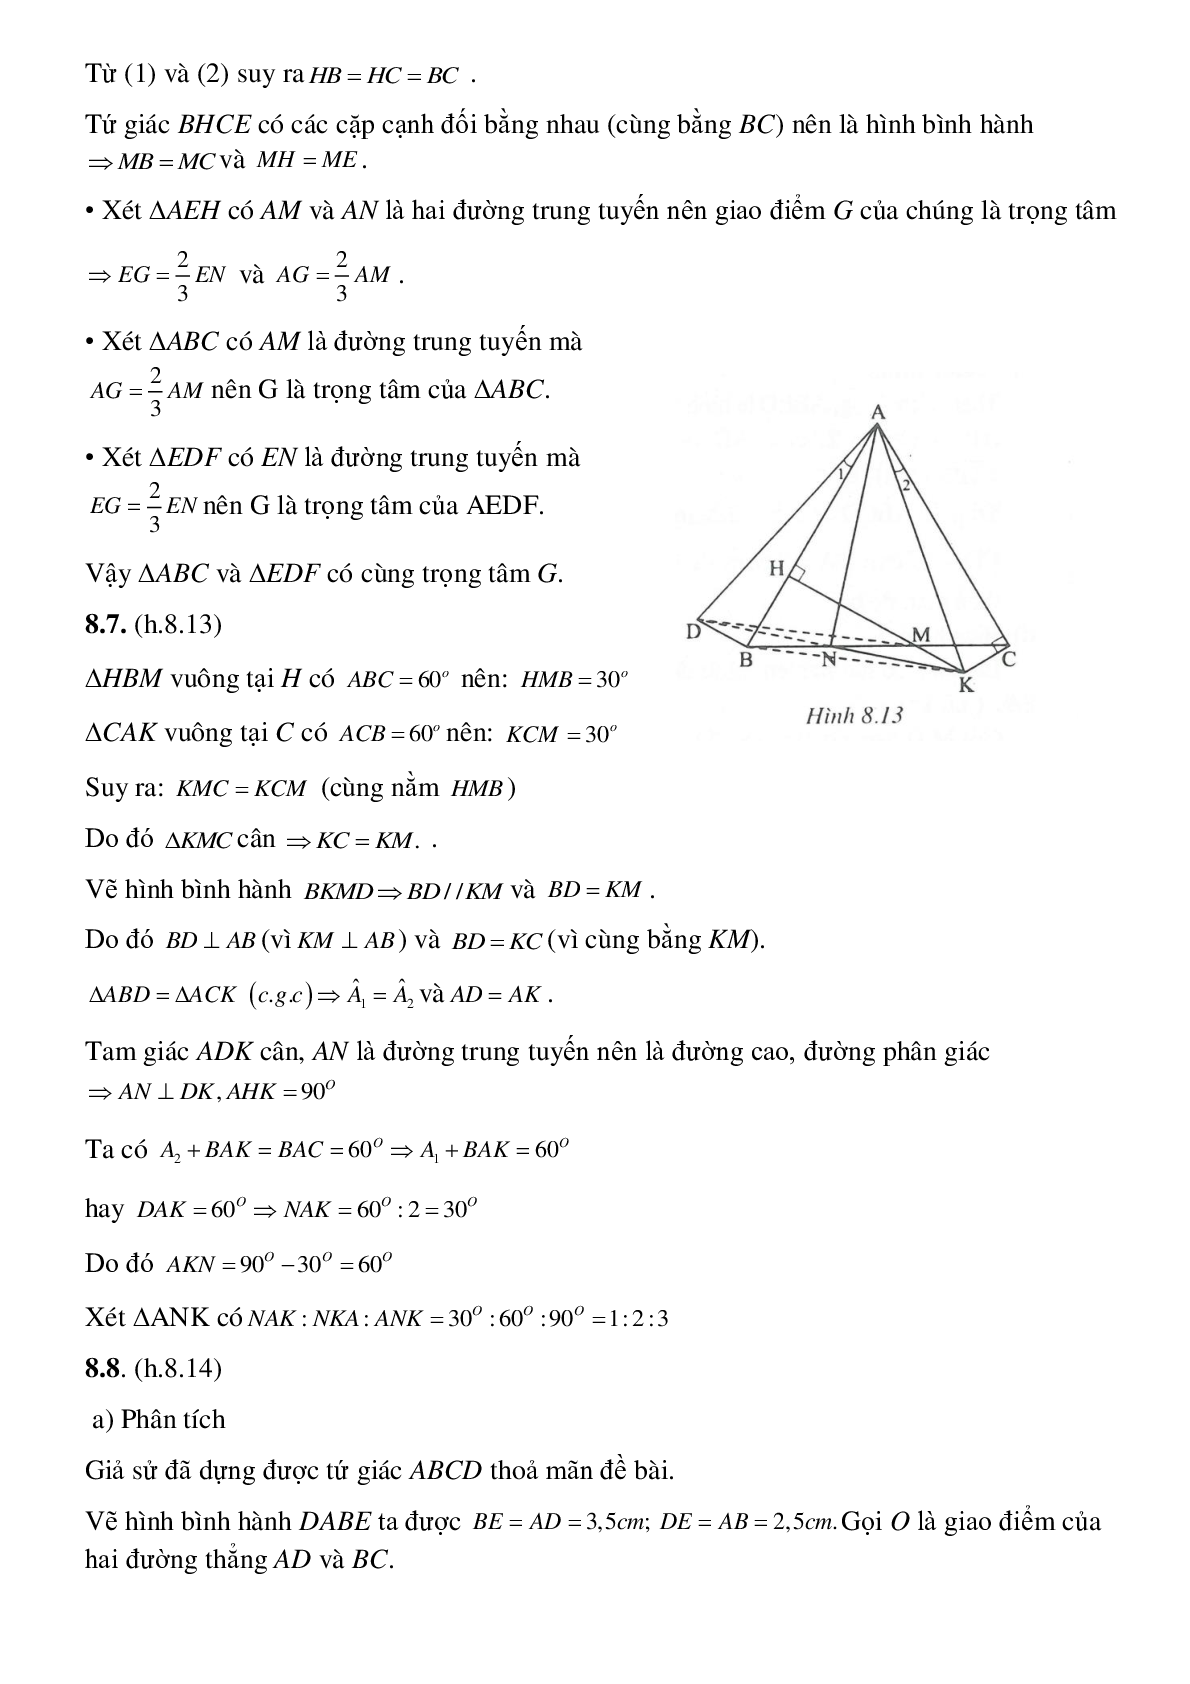 Hình phụ để giải toán trong chương tứ giác (trang 8)